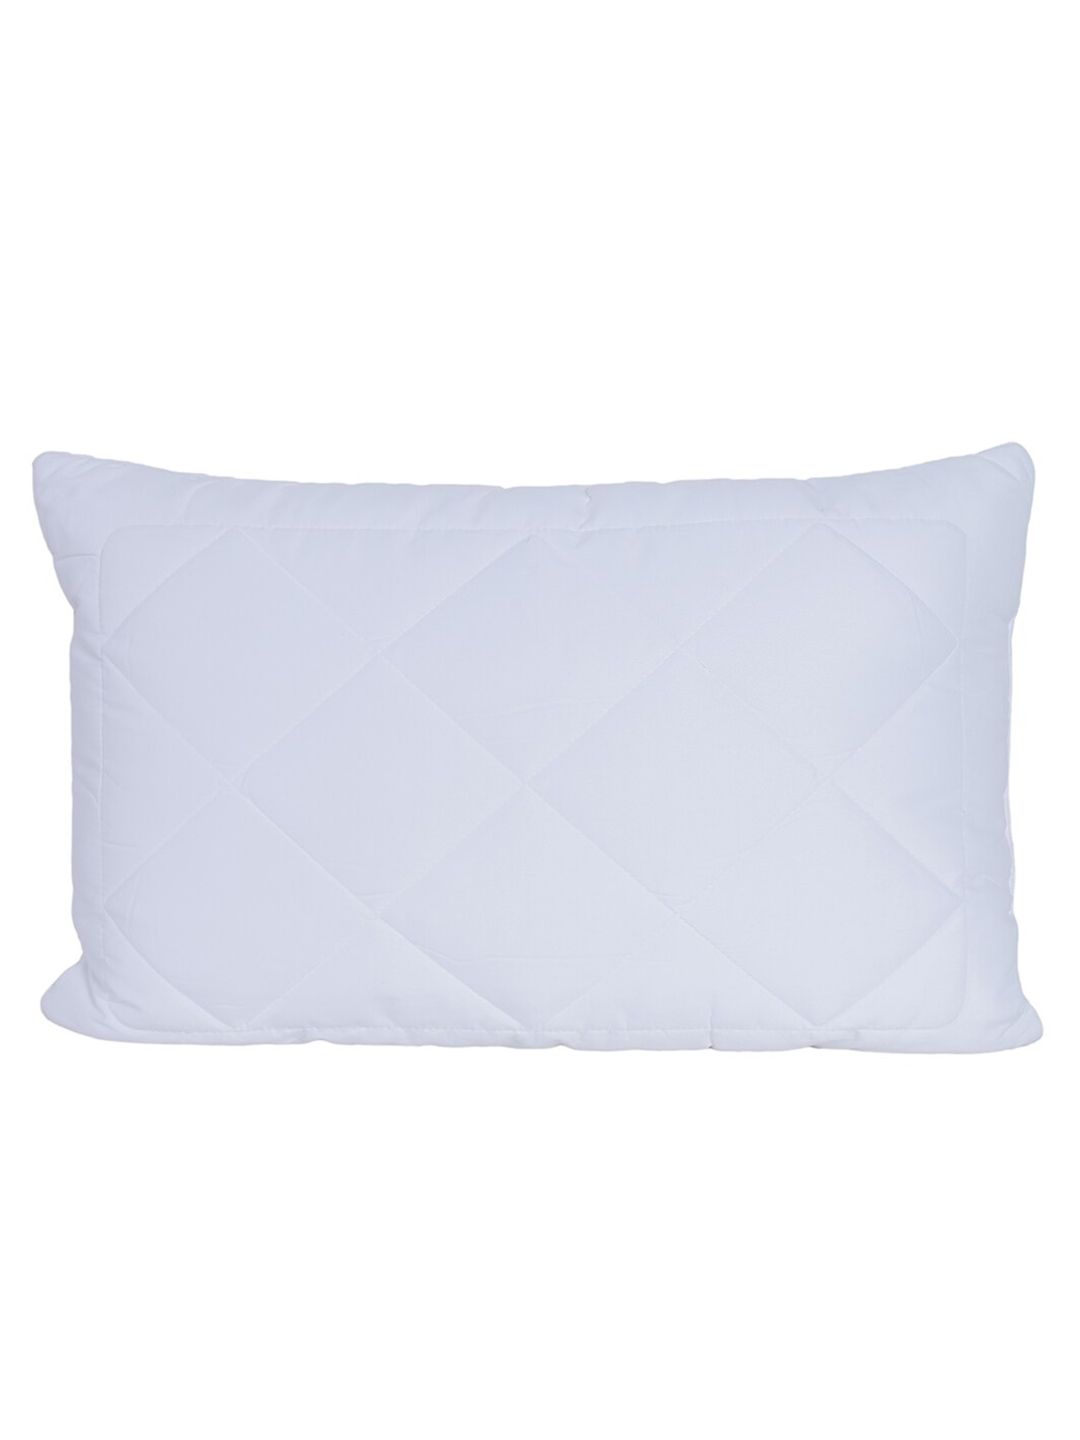 MASPAR White Solid 300TC Ultra-Soft Therapedic Pillow Price in India